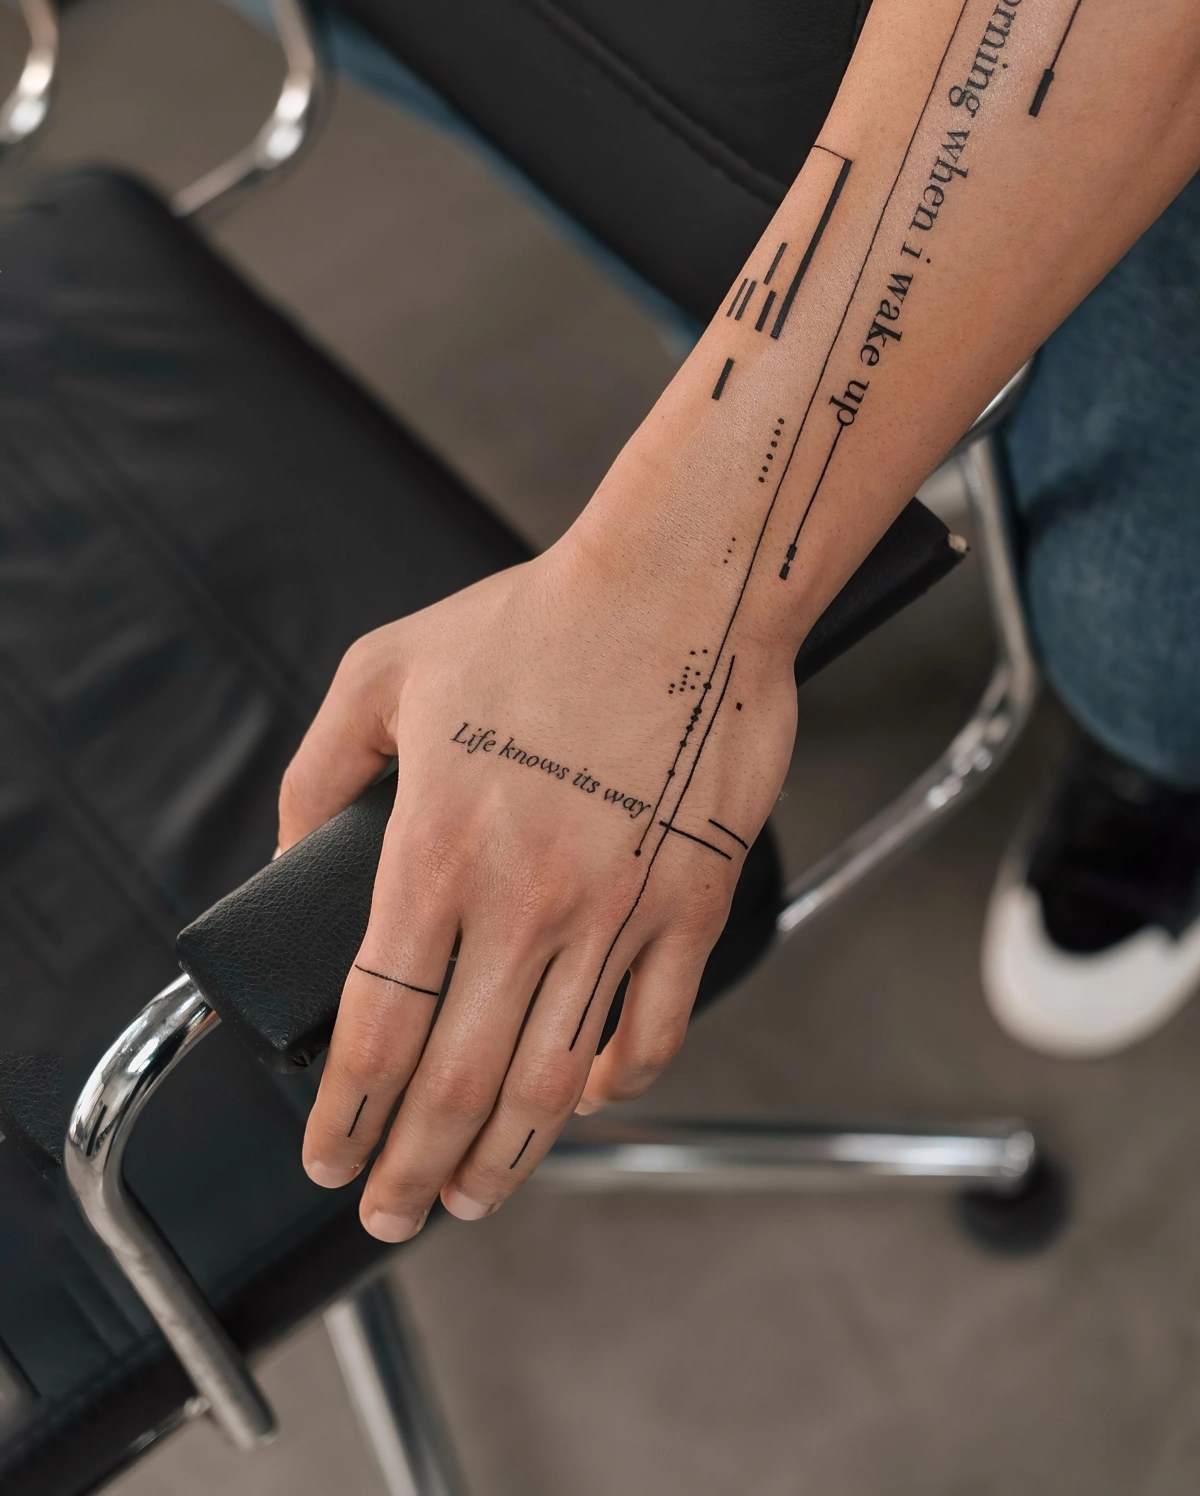 tatouage minimaliste homme motifs lignes geometriques lettres